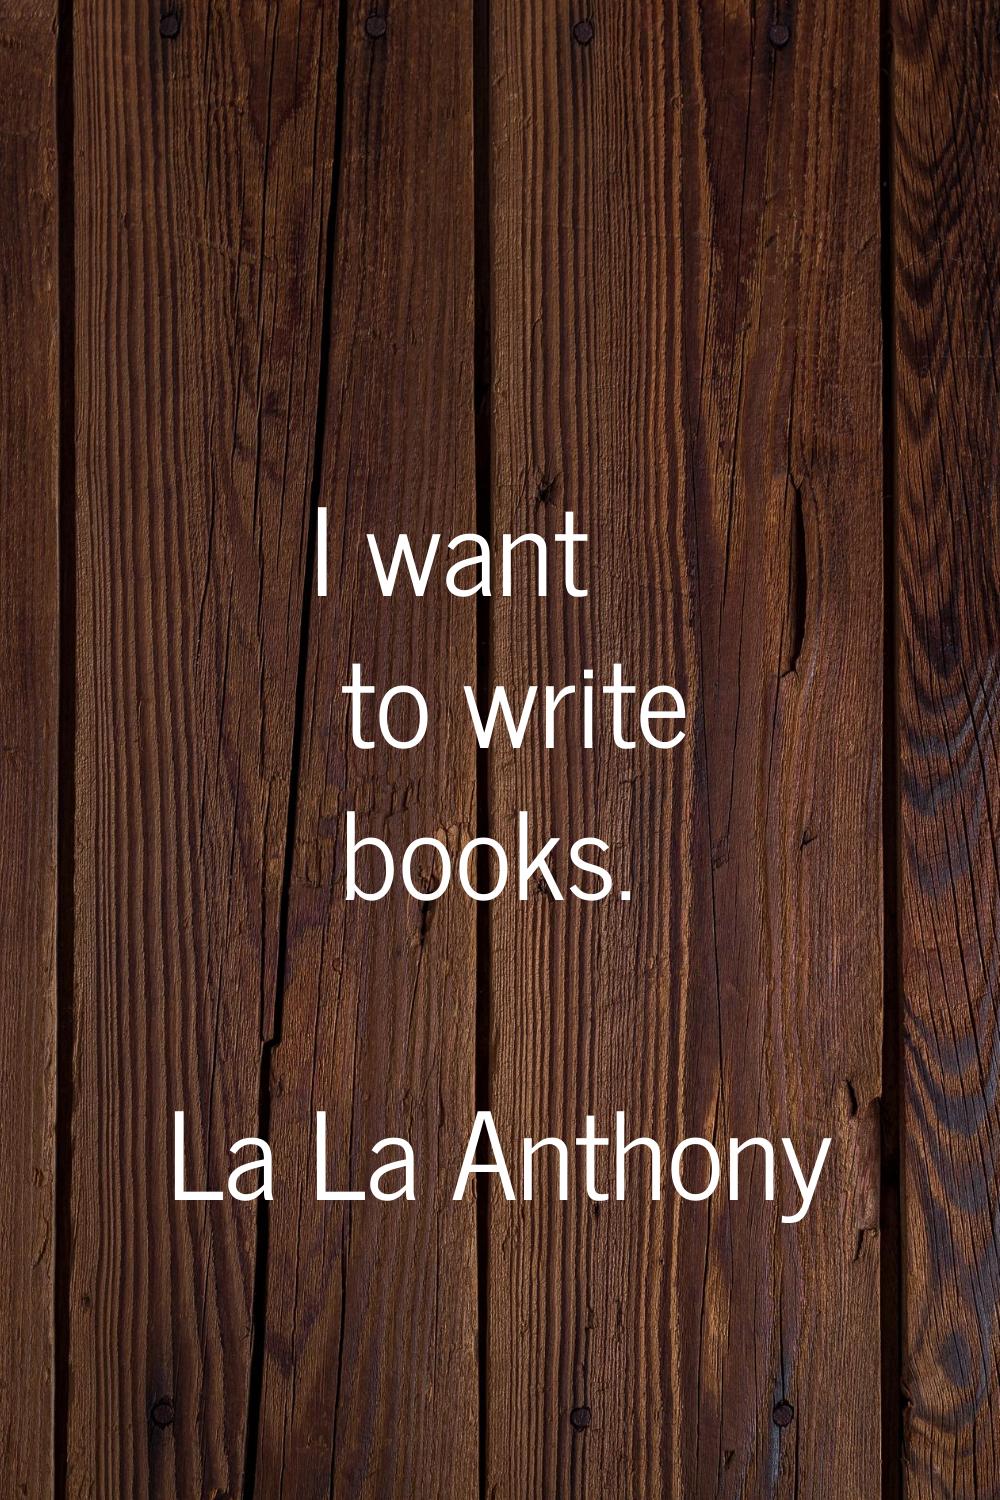 I want to write books.